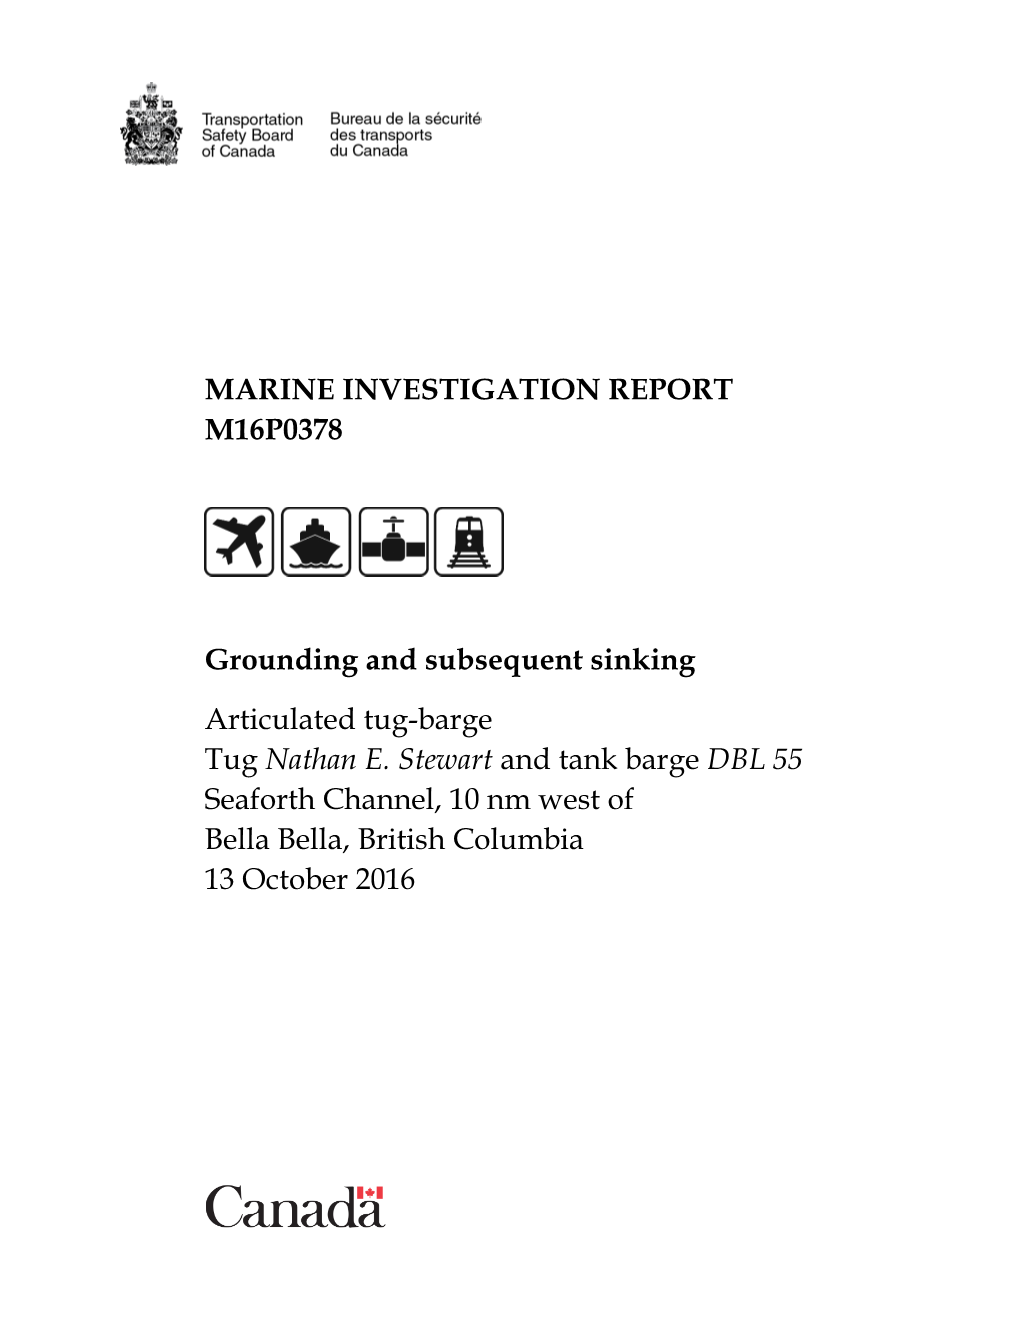 Investigation Report M16p0378